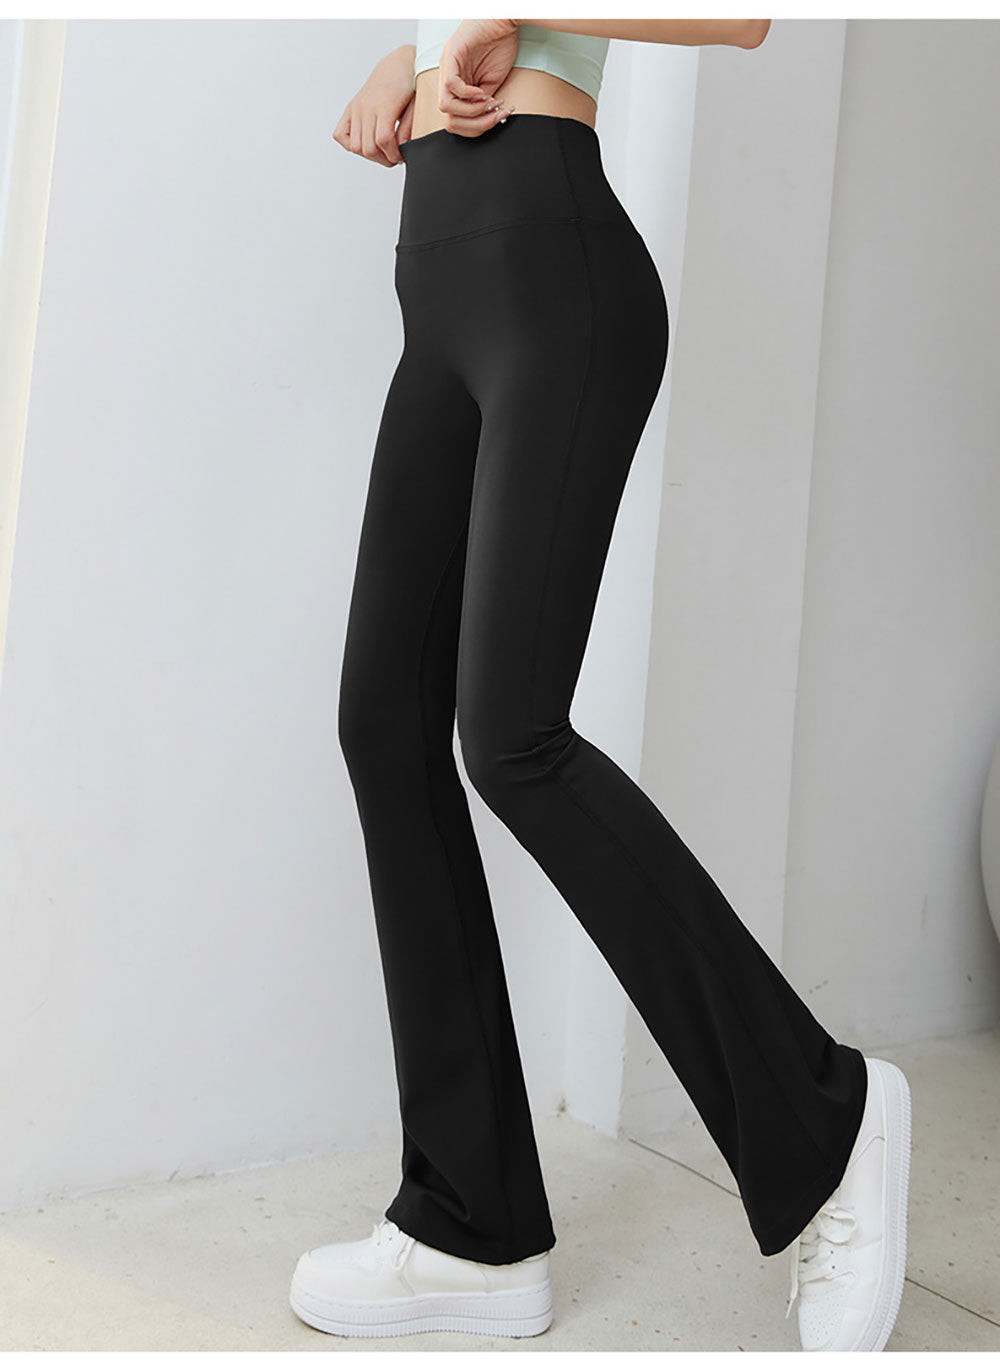 Black flared pants designed for women's gym sport Yoga Shop 2018